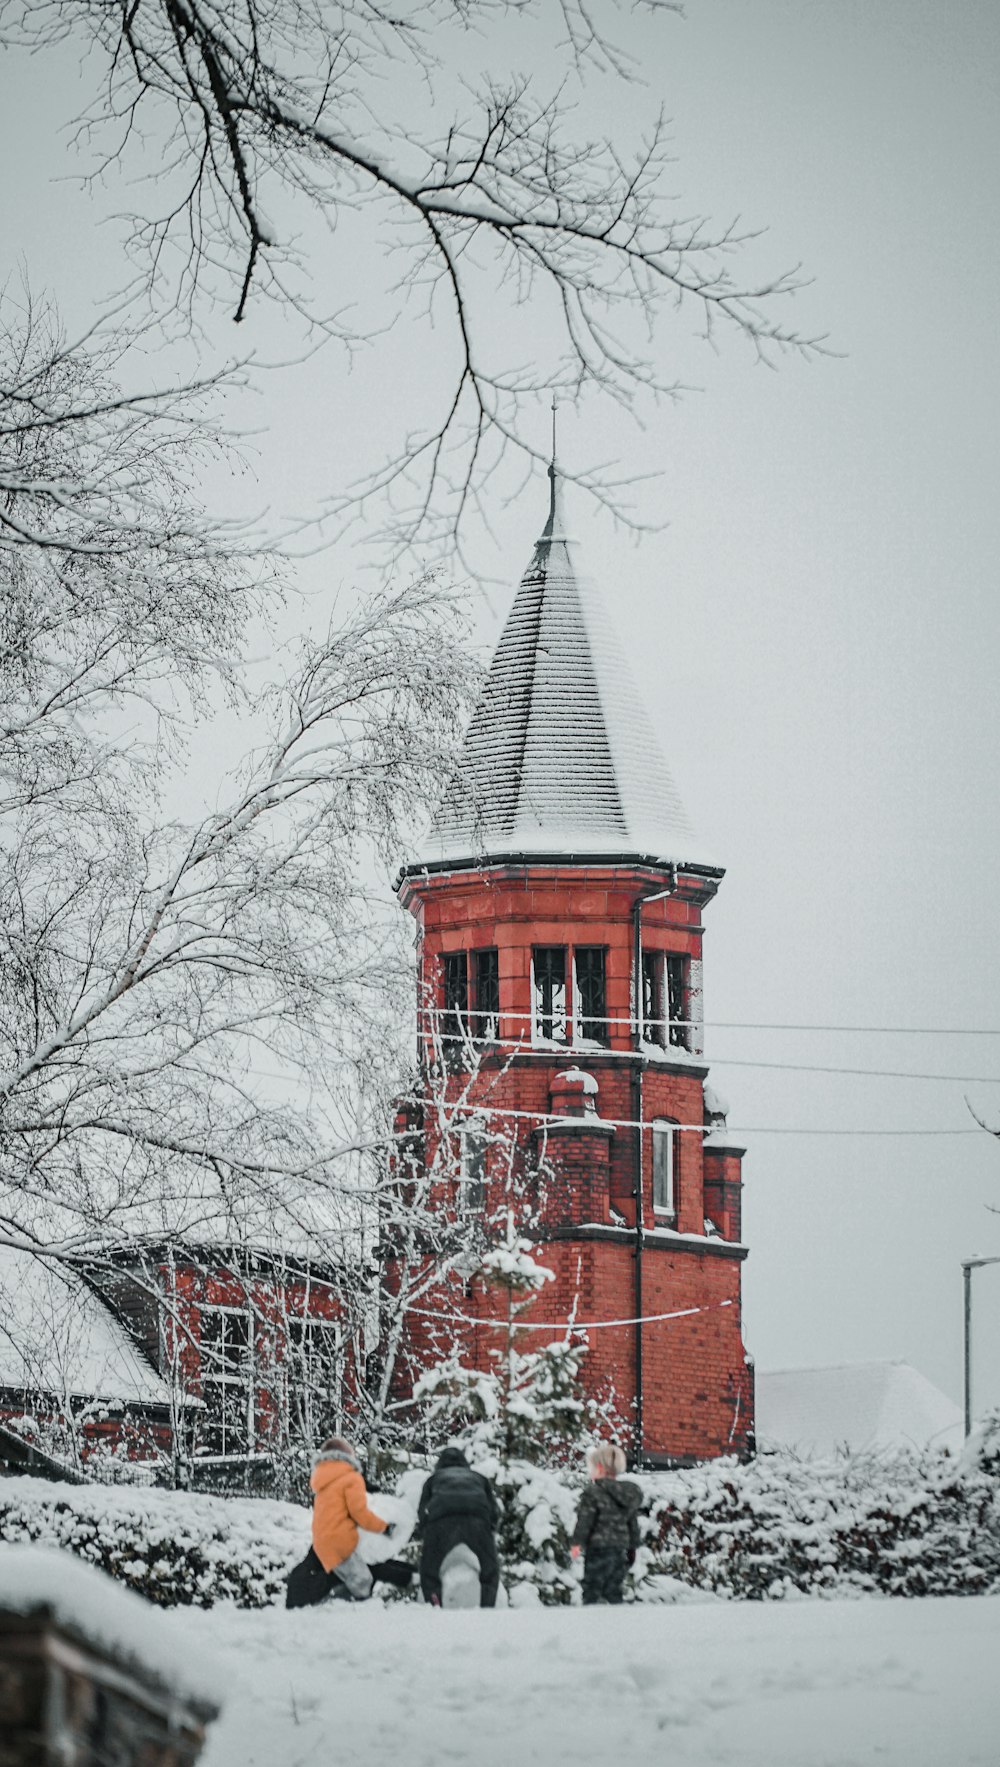 Edificio de hormigón rojo y blanco